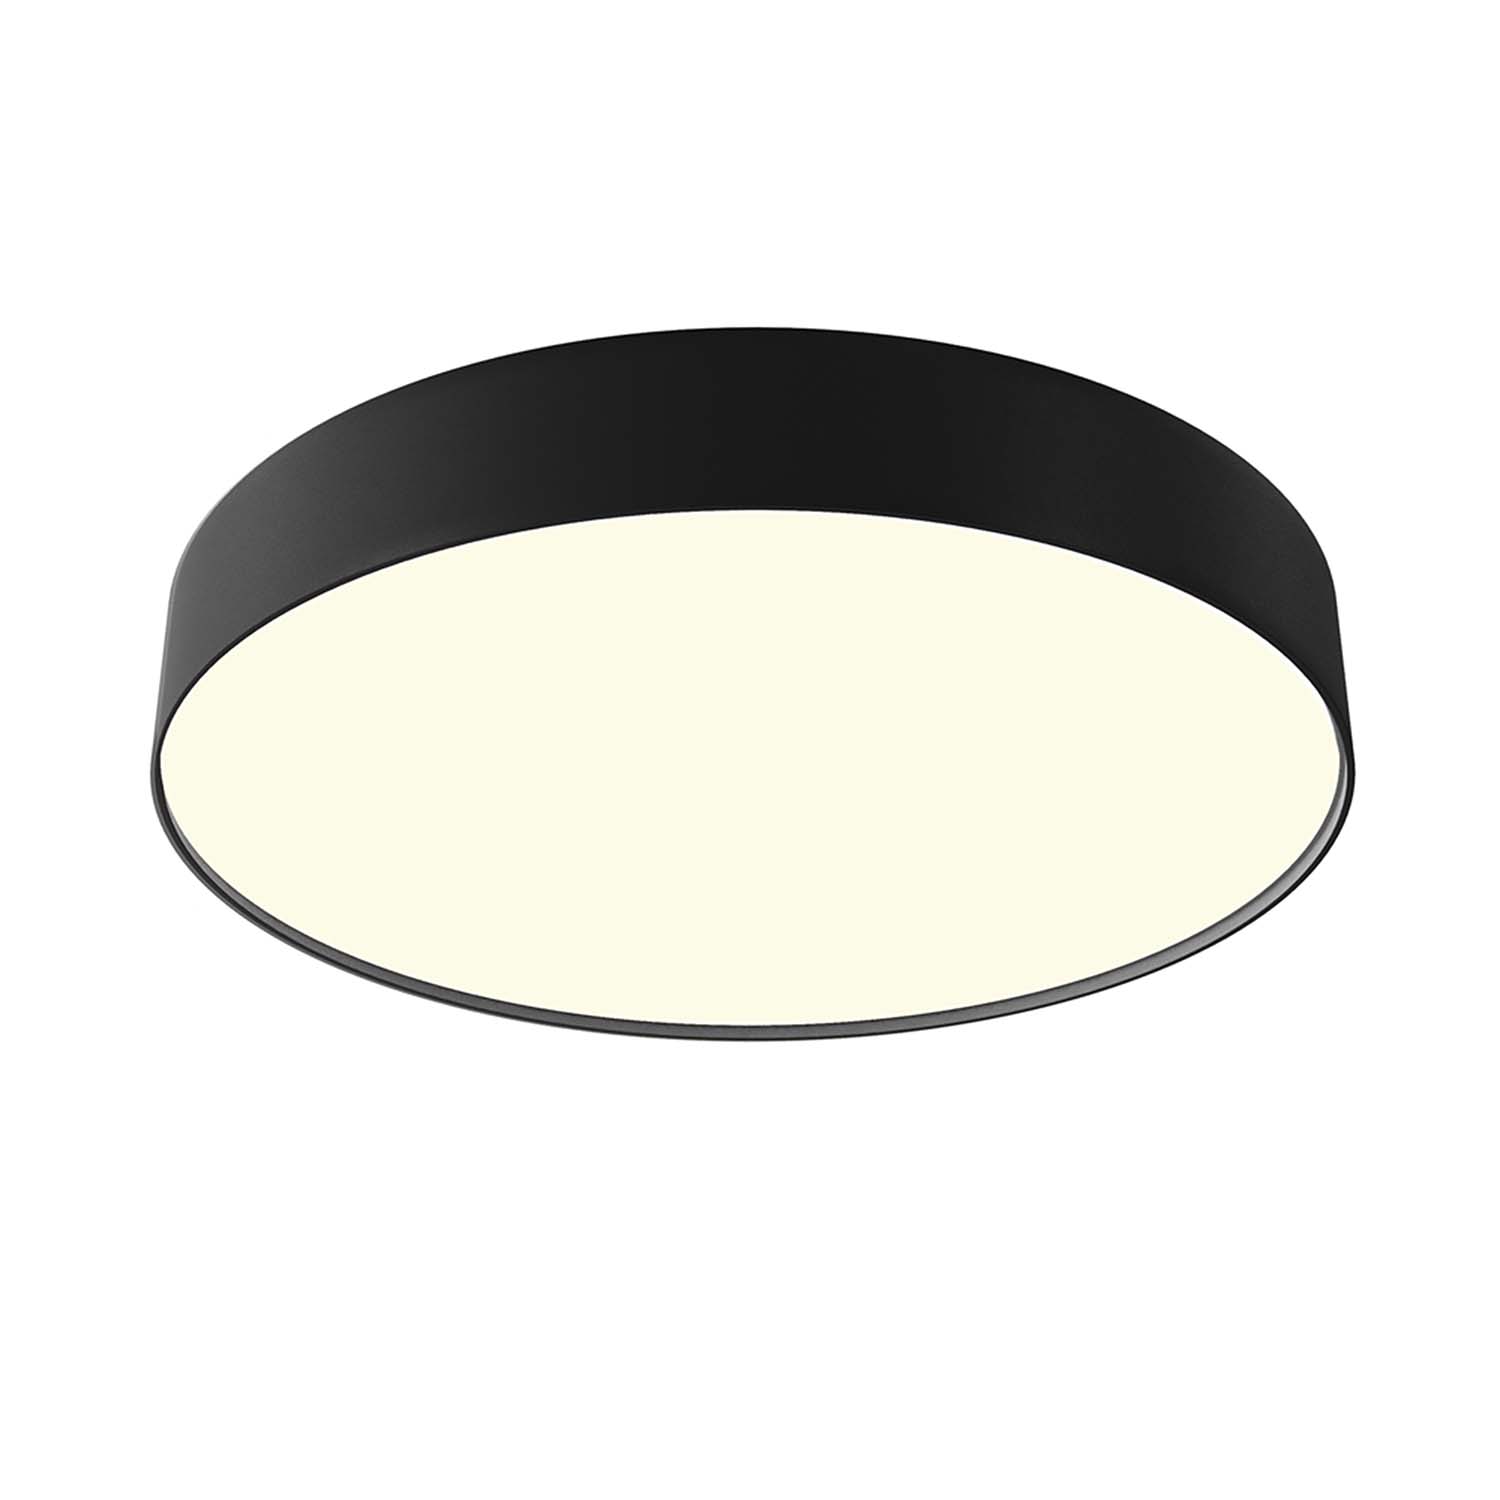 ZON – Design- und minimalistische Deckenleuchte in Schwarz oder Weiß, integrierte LED